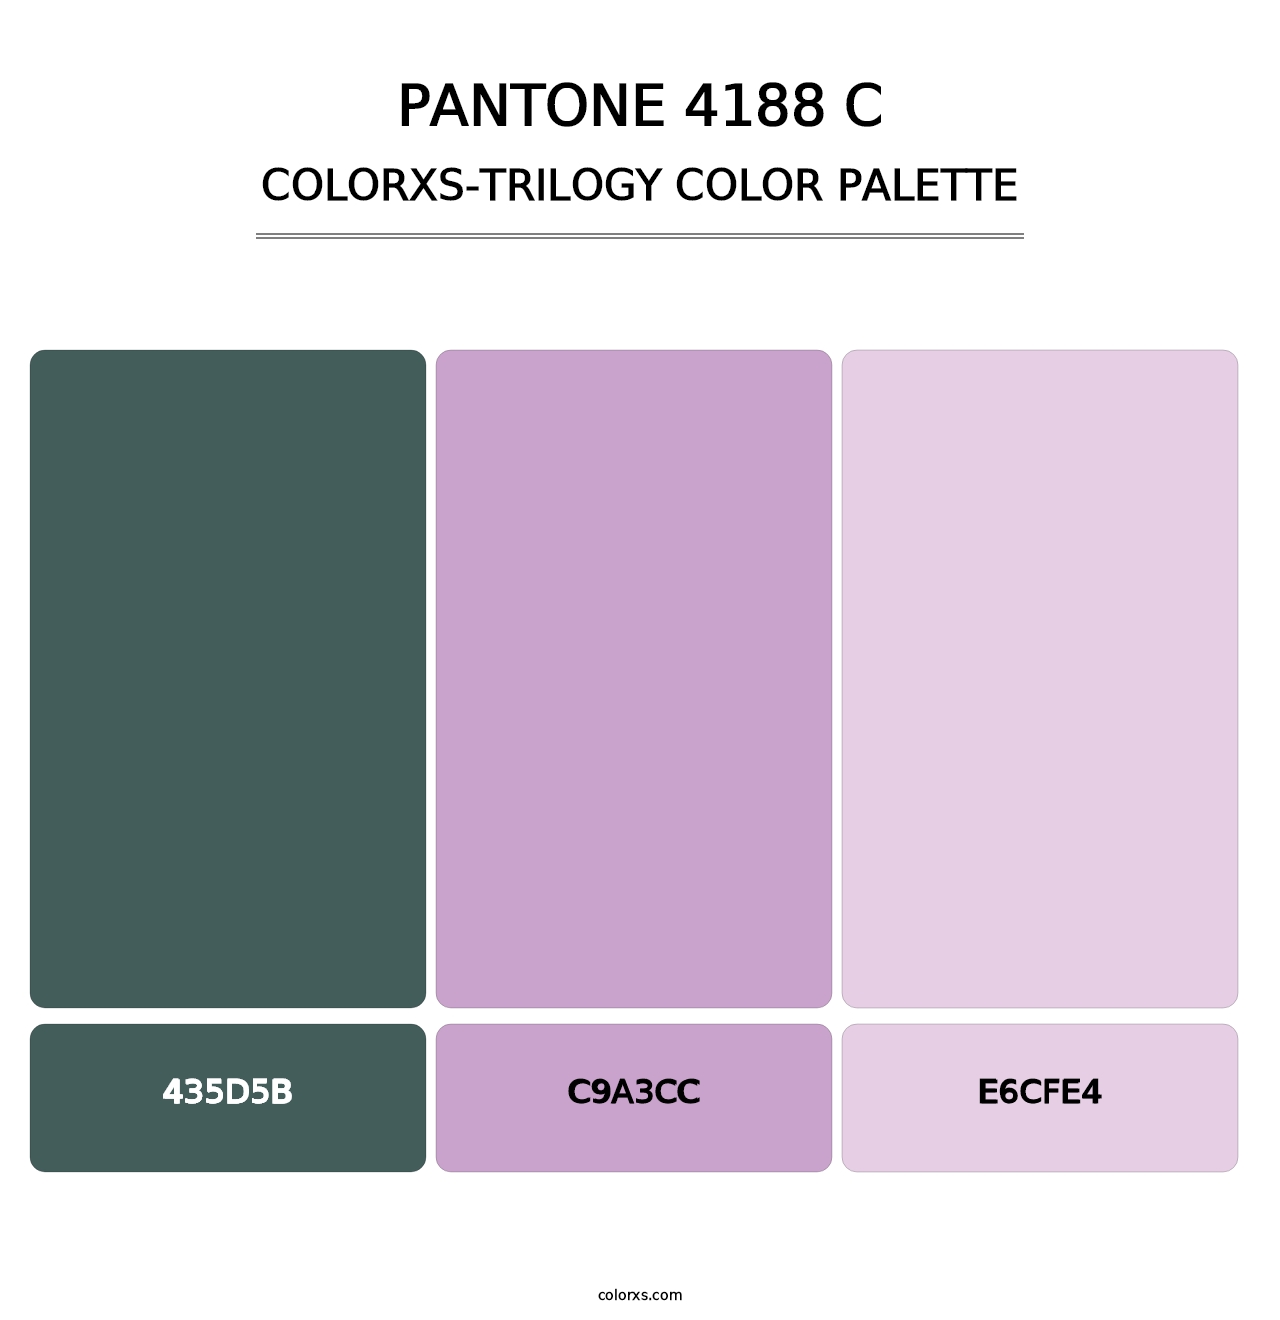 PANTONE 4188 C - Colorxs Trilogy Palette